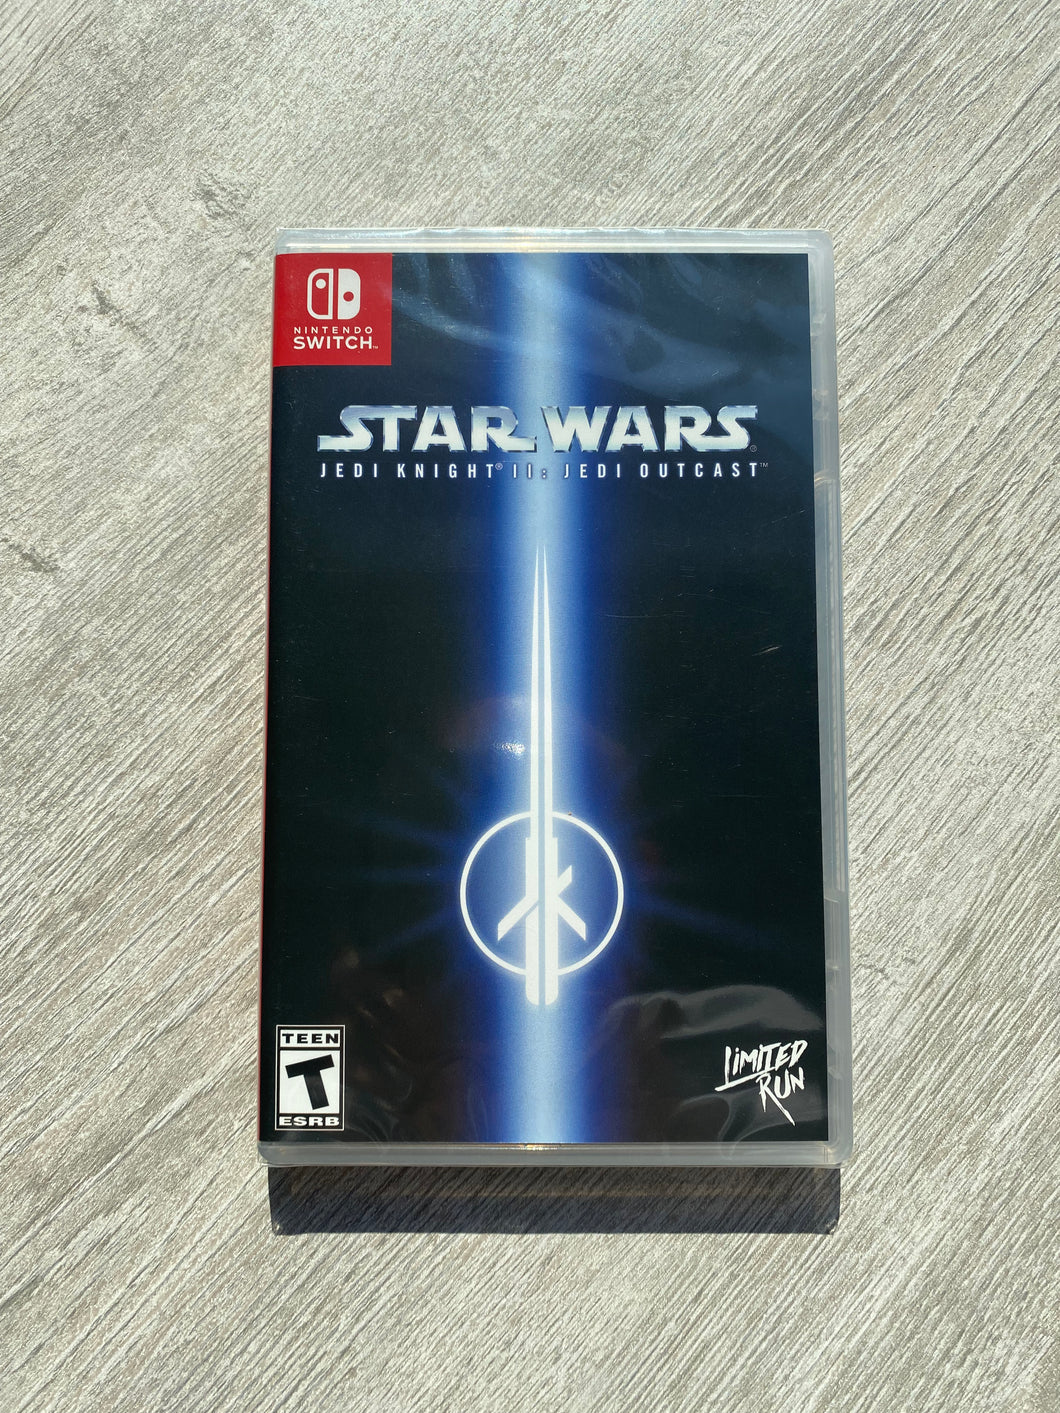 Star wars Jedi knight II Jedi outcast / Limited run games / Switch